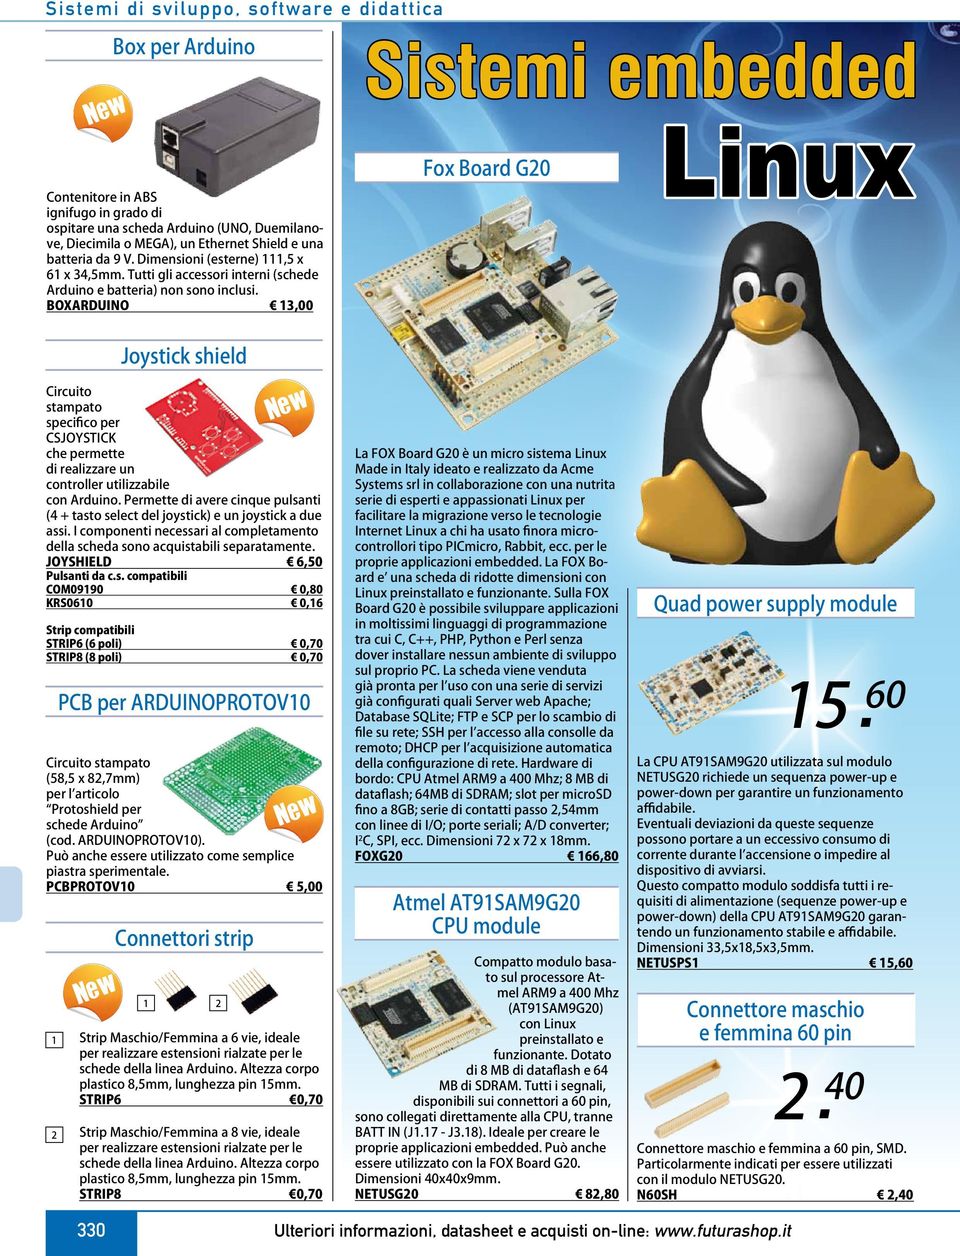 BOXARDUINO 13, Sistemi embedded Fox Board G20 Linux 1 2 Joystick shield Circuito stampato specifico per CSJOYSTICK che permette di realizzare un controller utilizzabile con Arduino.